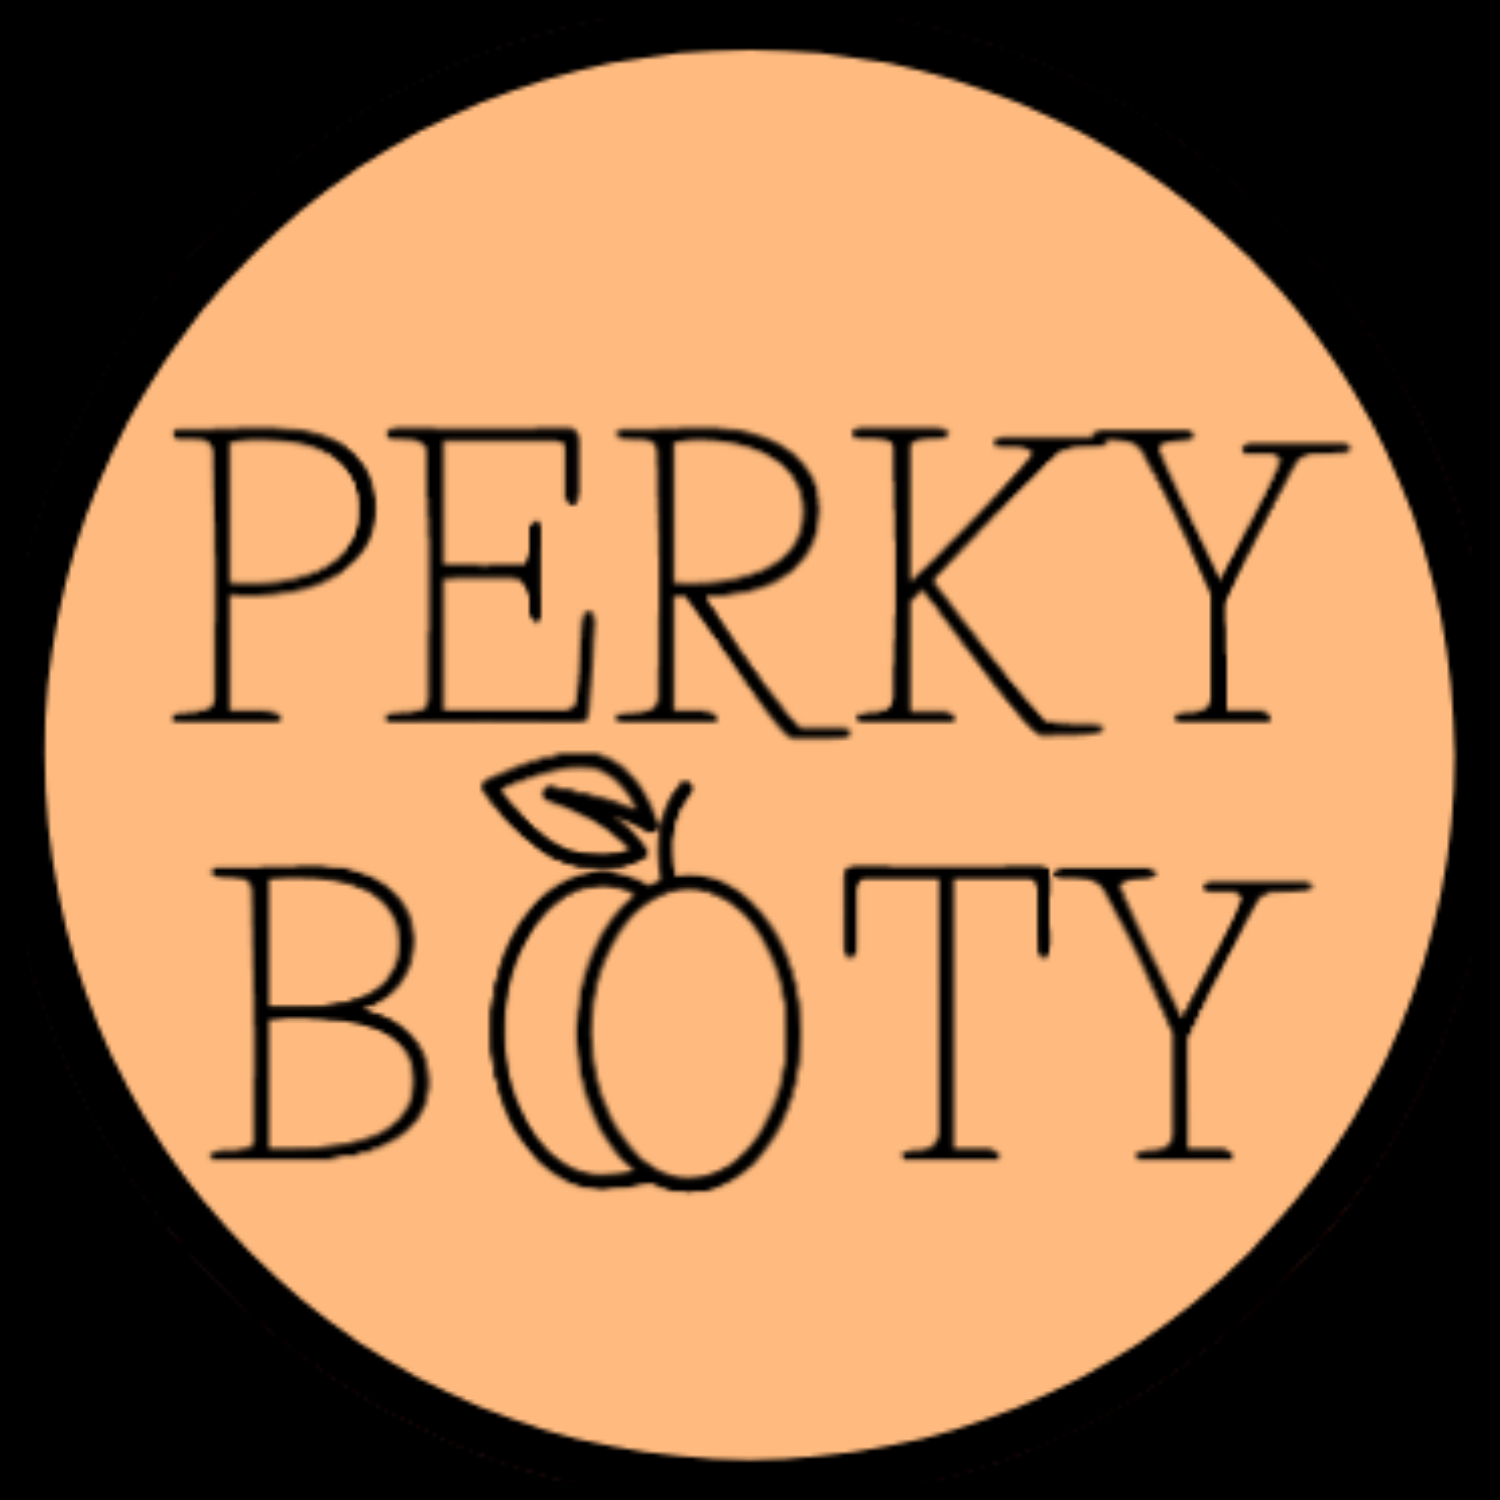 Perky Booty